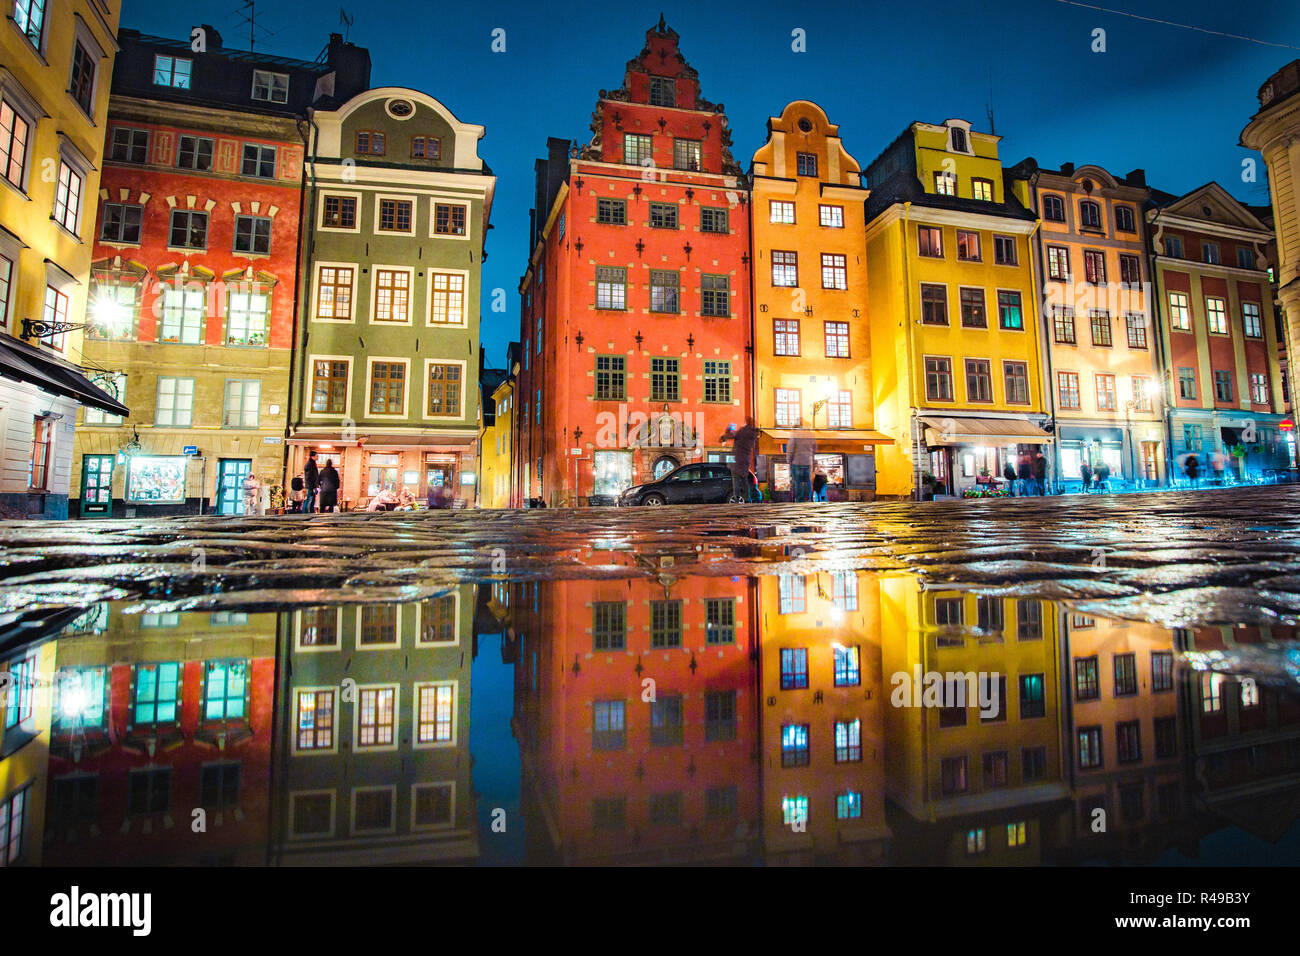 Klassische Ansicht der bunten Häusern an der berühmten stortorget Stadtplatz in der Stockholmer Altstadt Gamla Stan (Altstadt) in einer Pfütze in der Nacht widerspiegelt, Centra Stockfoto